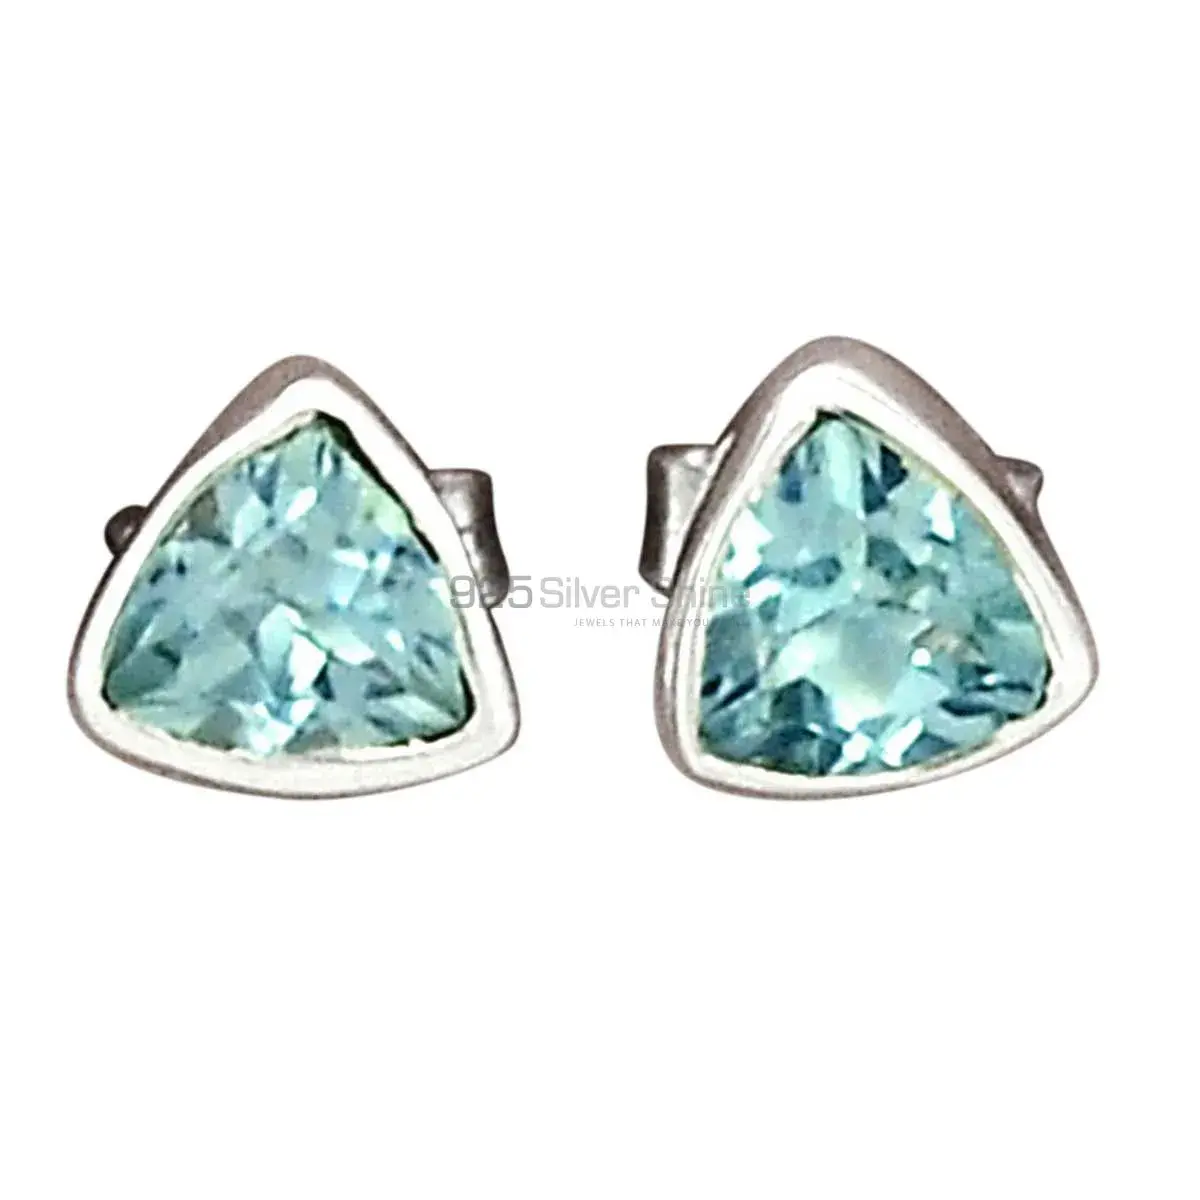 Wholesale 925 Sterling Silver Earrings In Genuine Blue Topaz Gemstone 925SE2761